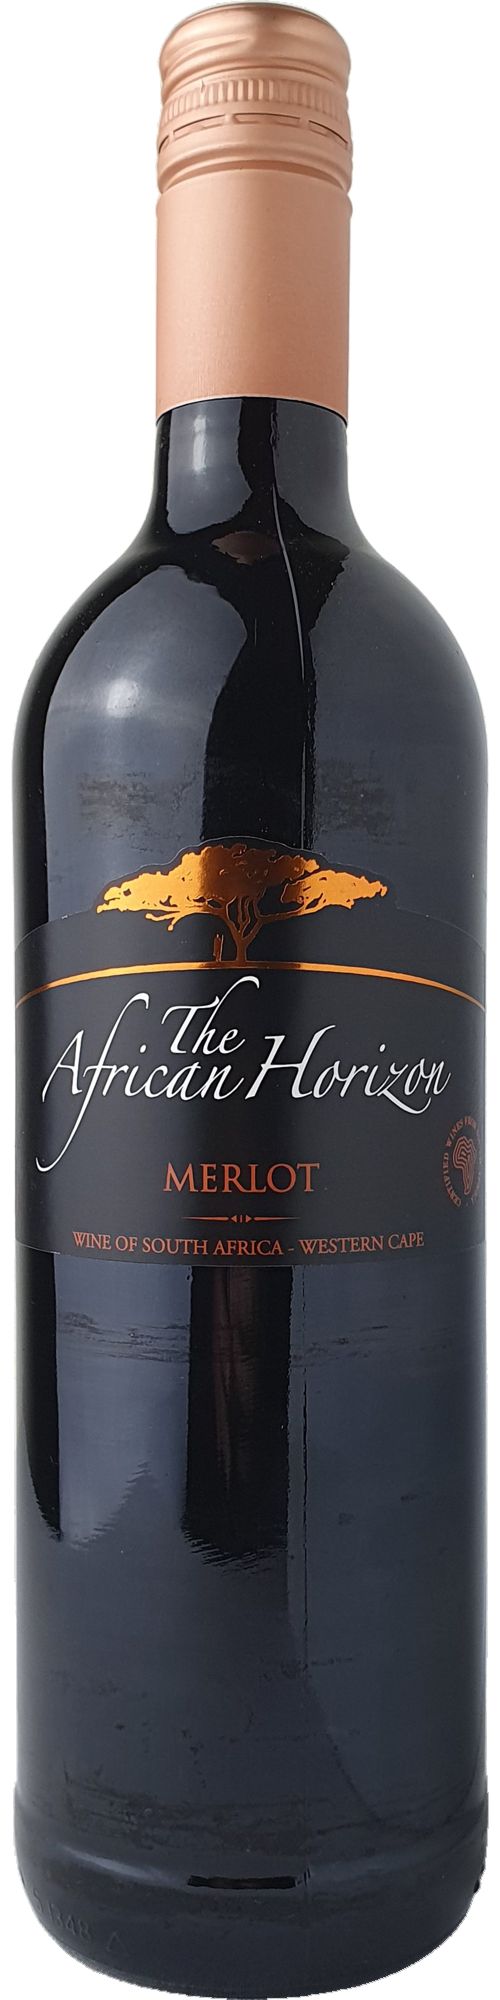 African Horizon Merlot Rotwein lieblich sweet